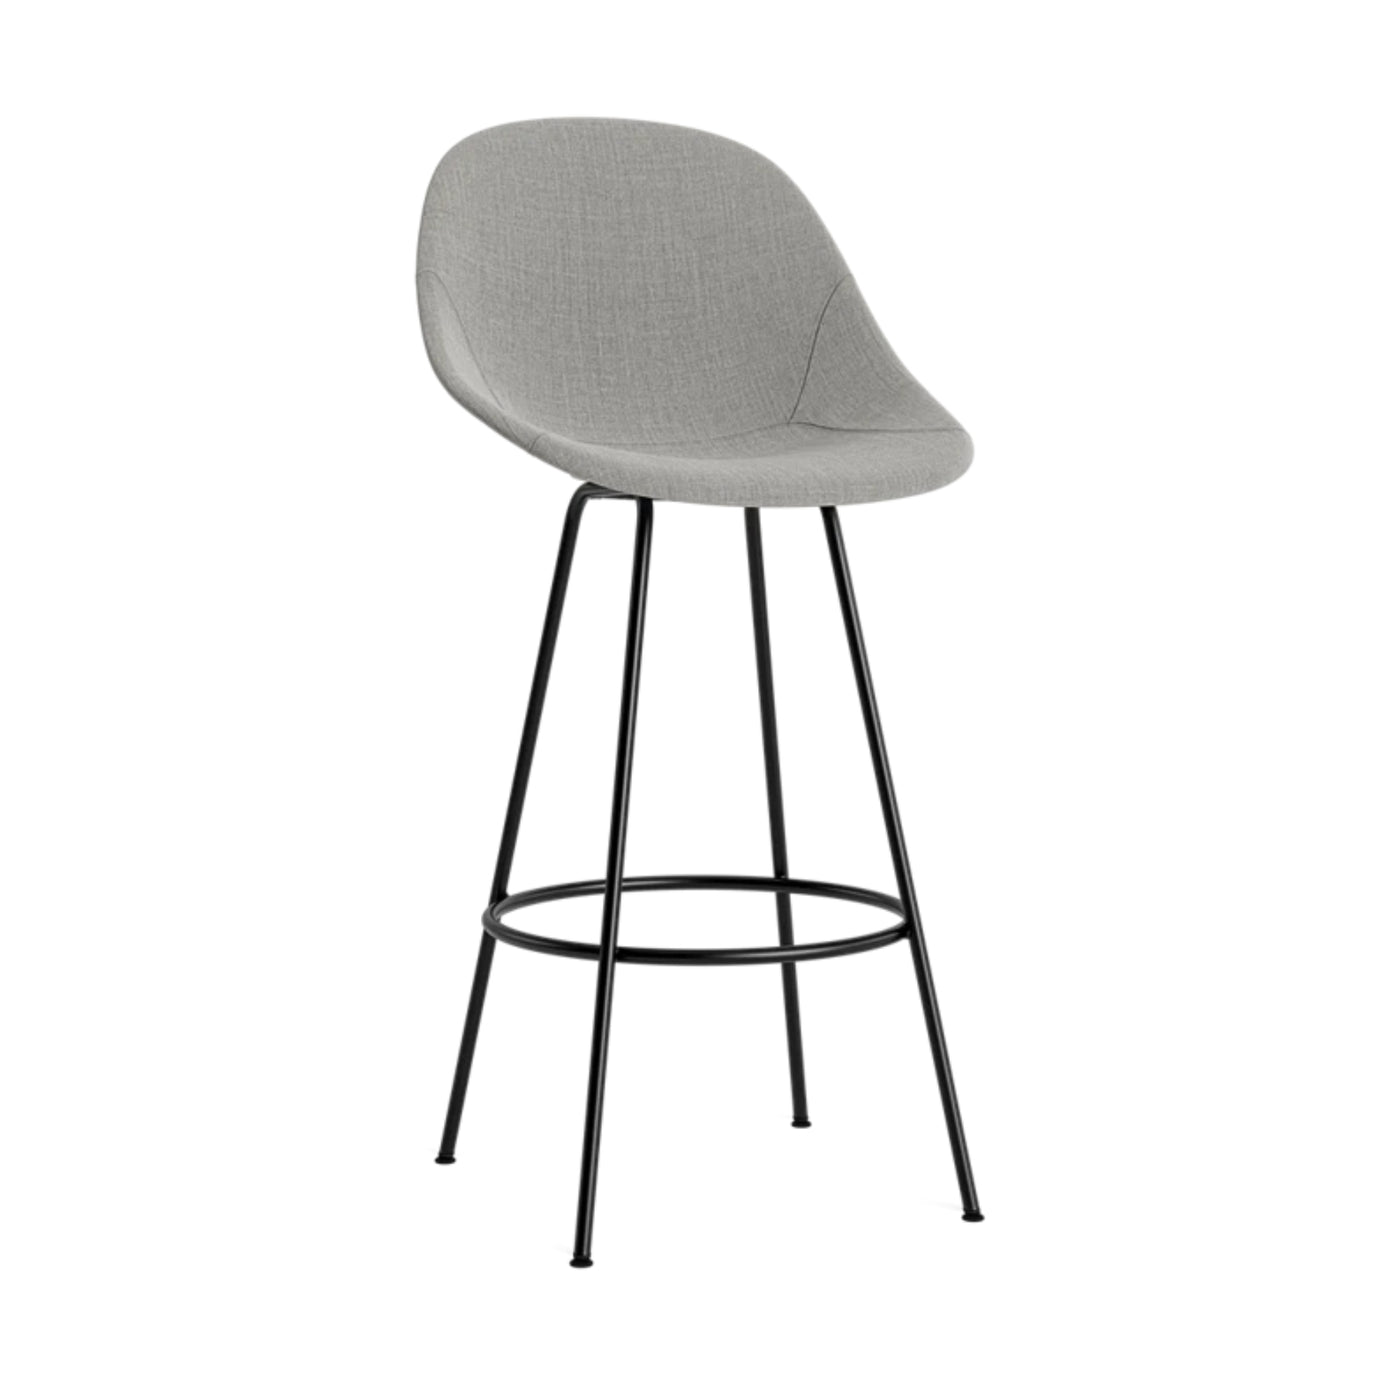 Normann Copenhagen Mat Bar Chair. Shop now at someday designs. #colour_remix-133